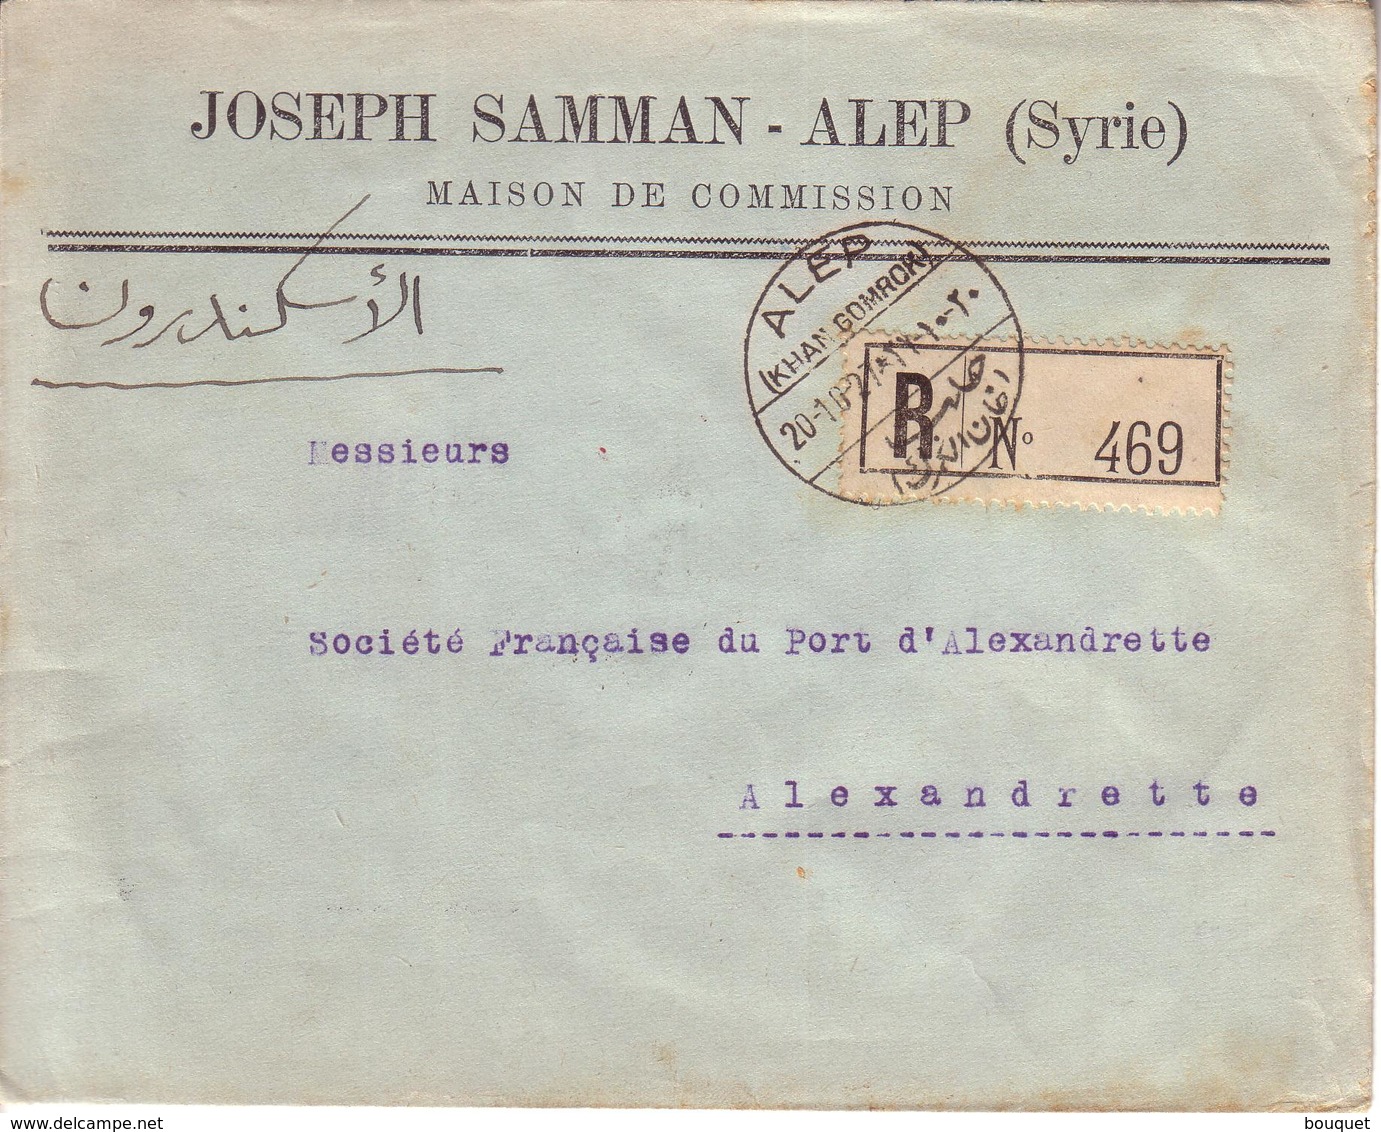 SYRIE LIBAN - LETTRE JOSEPH SAMMAN D' ALEP POUR LE PORT D' ALEXANDRETTE , CAD " ALEP KHAN GOMROK " + RECOMMANDE - 1929 - Covers & Documents